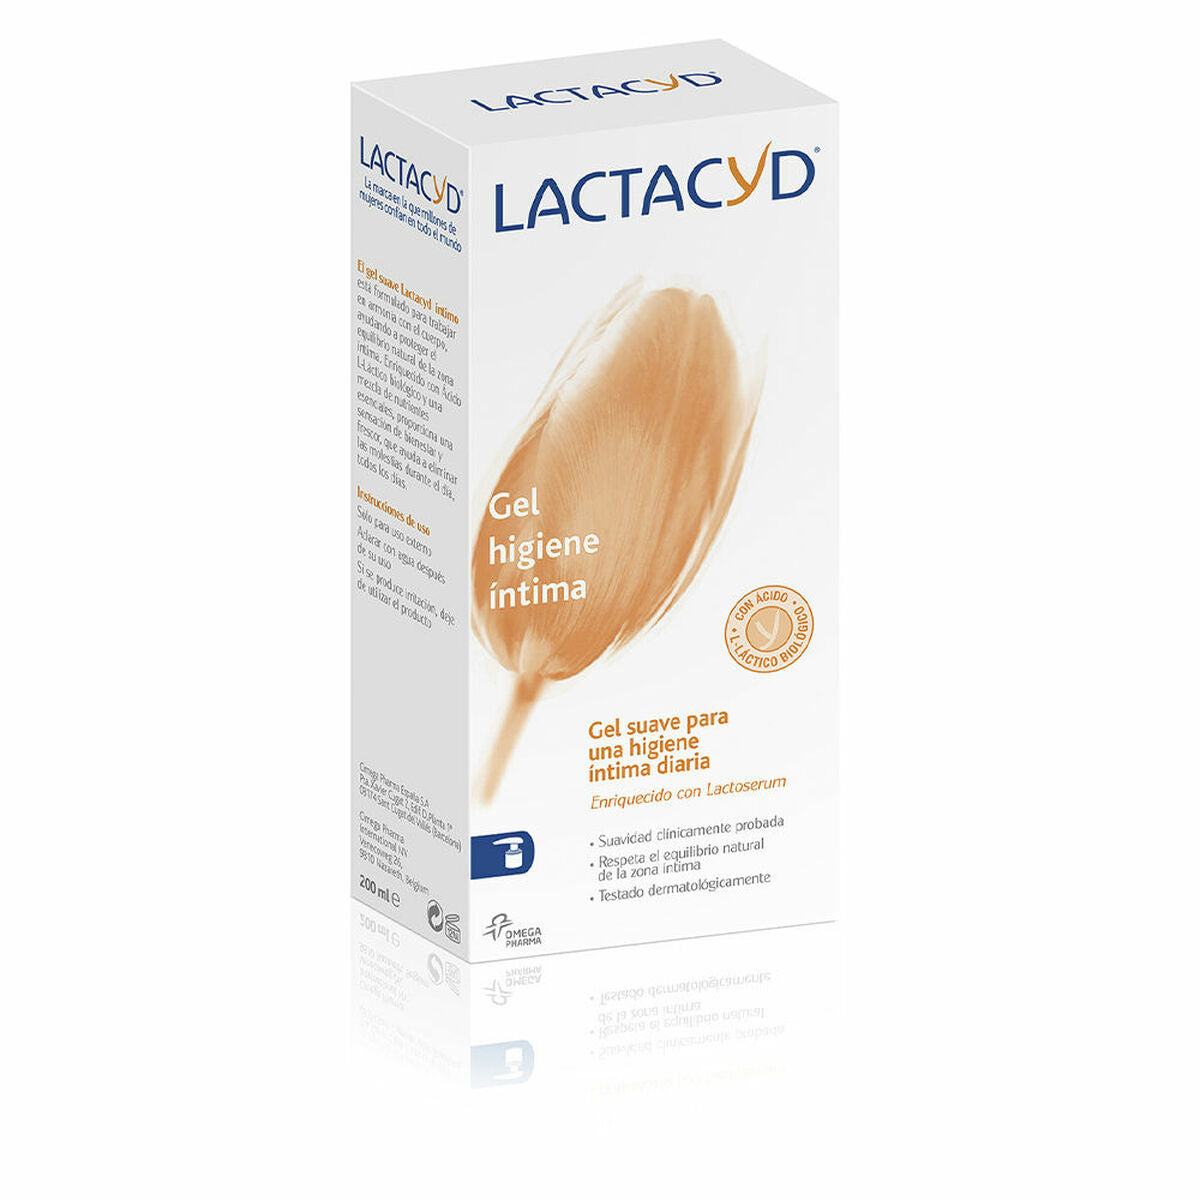 Intimate hygiene gel Lactacyd (200 ml)-0